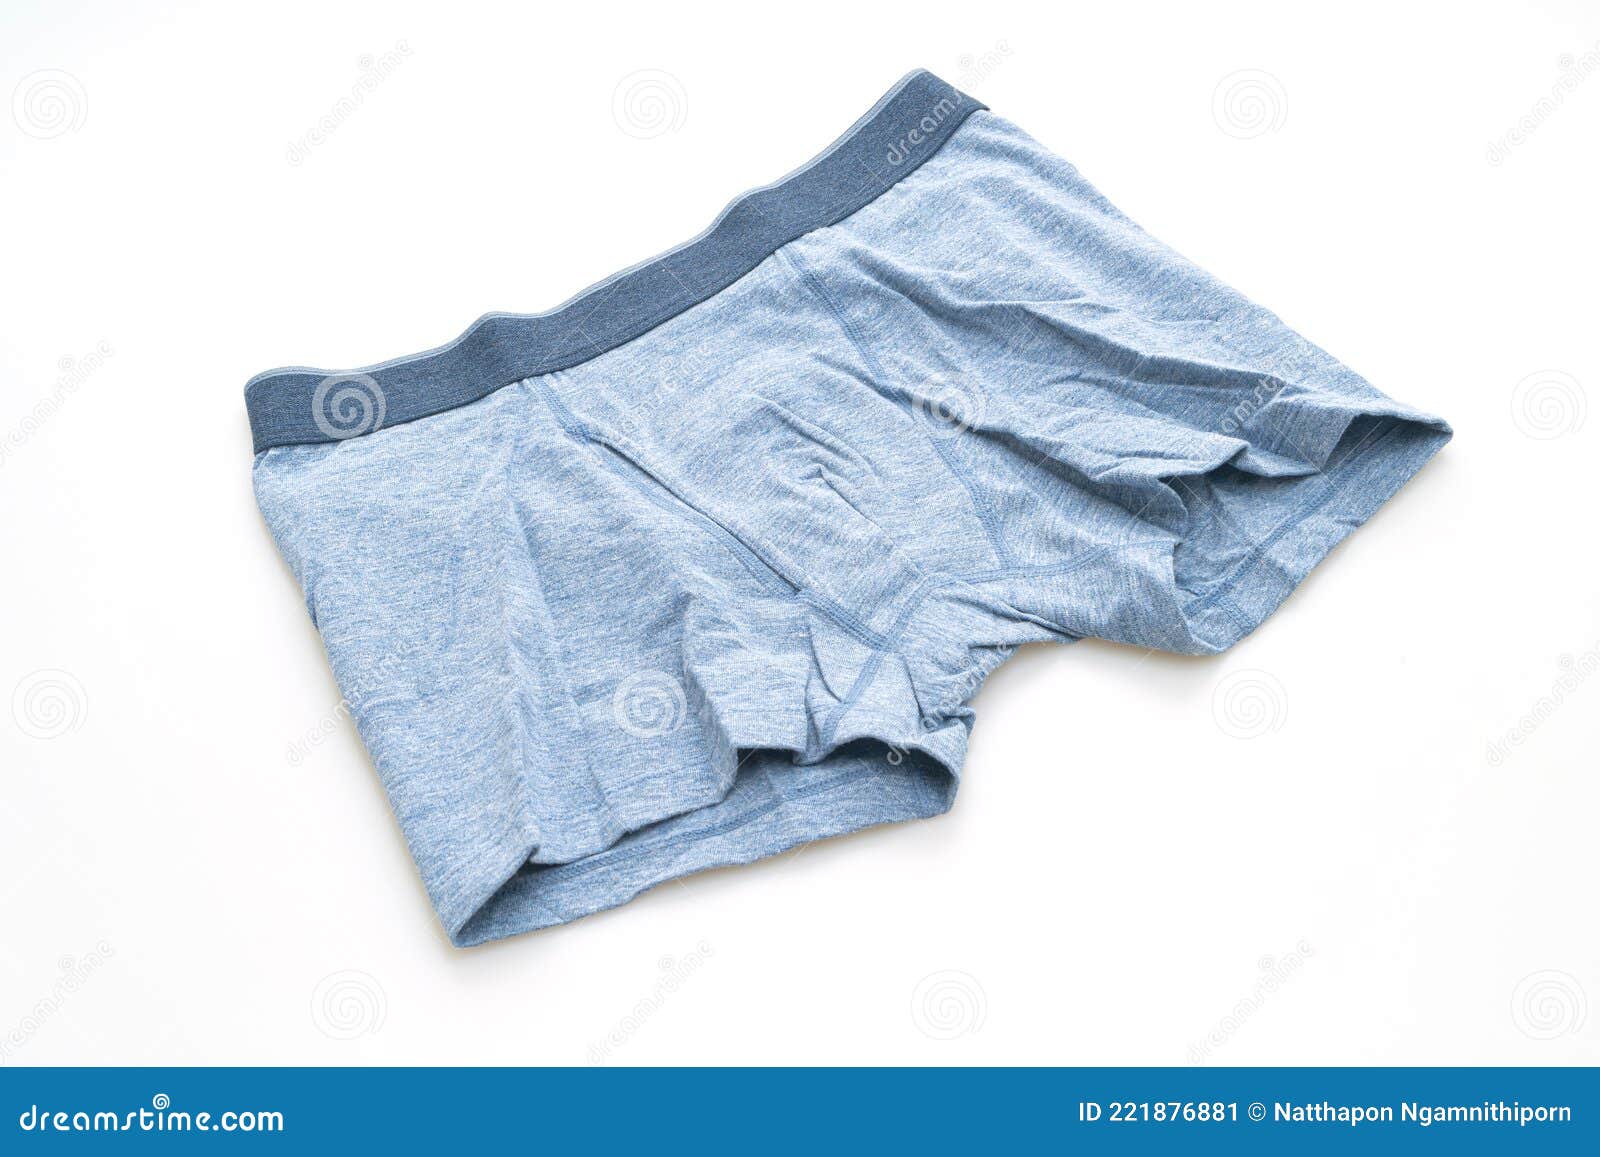 Blue Men Underwear on White Background Stock Image - Image of fold ...